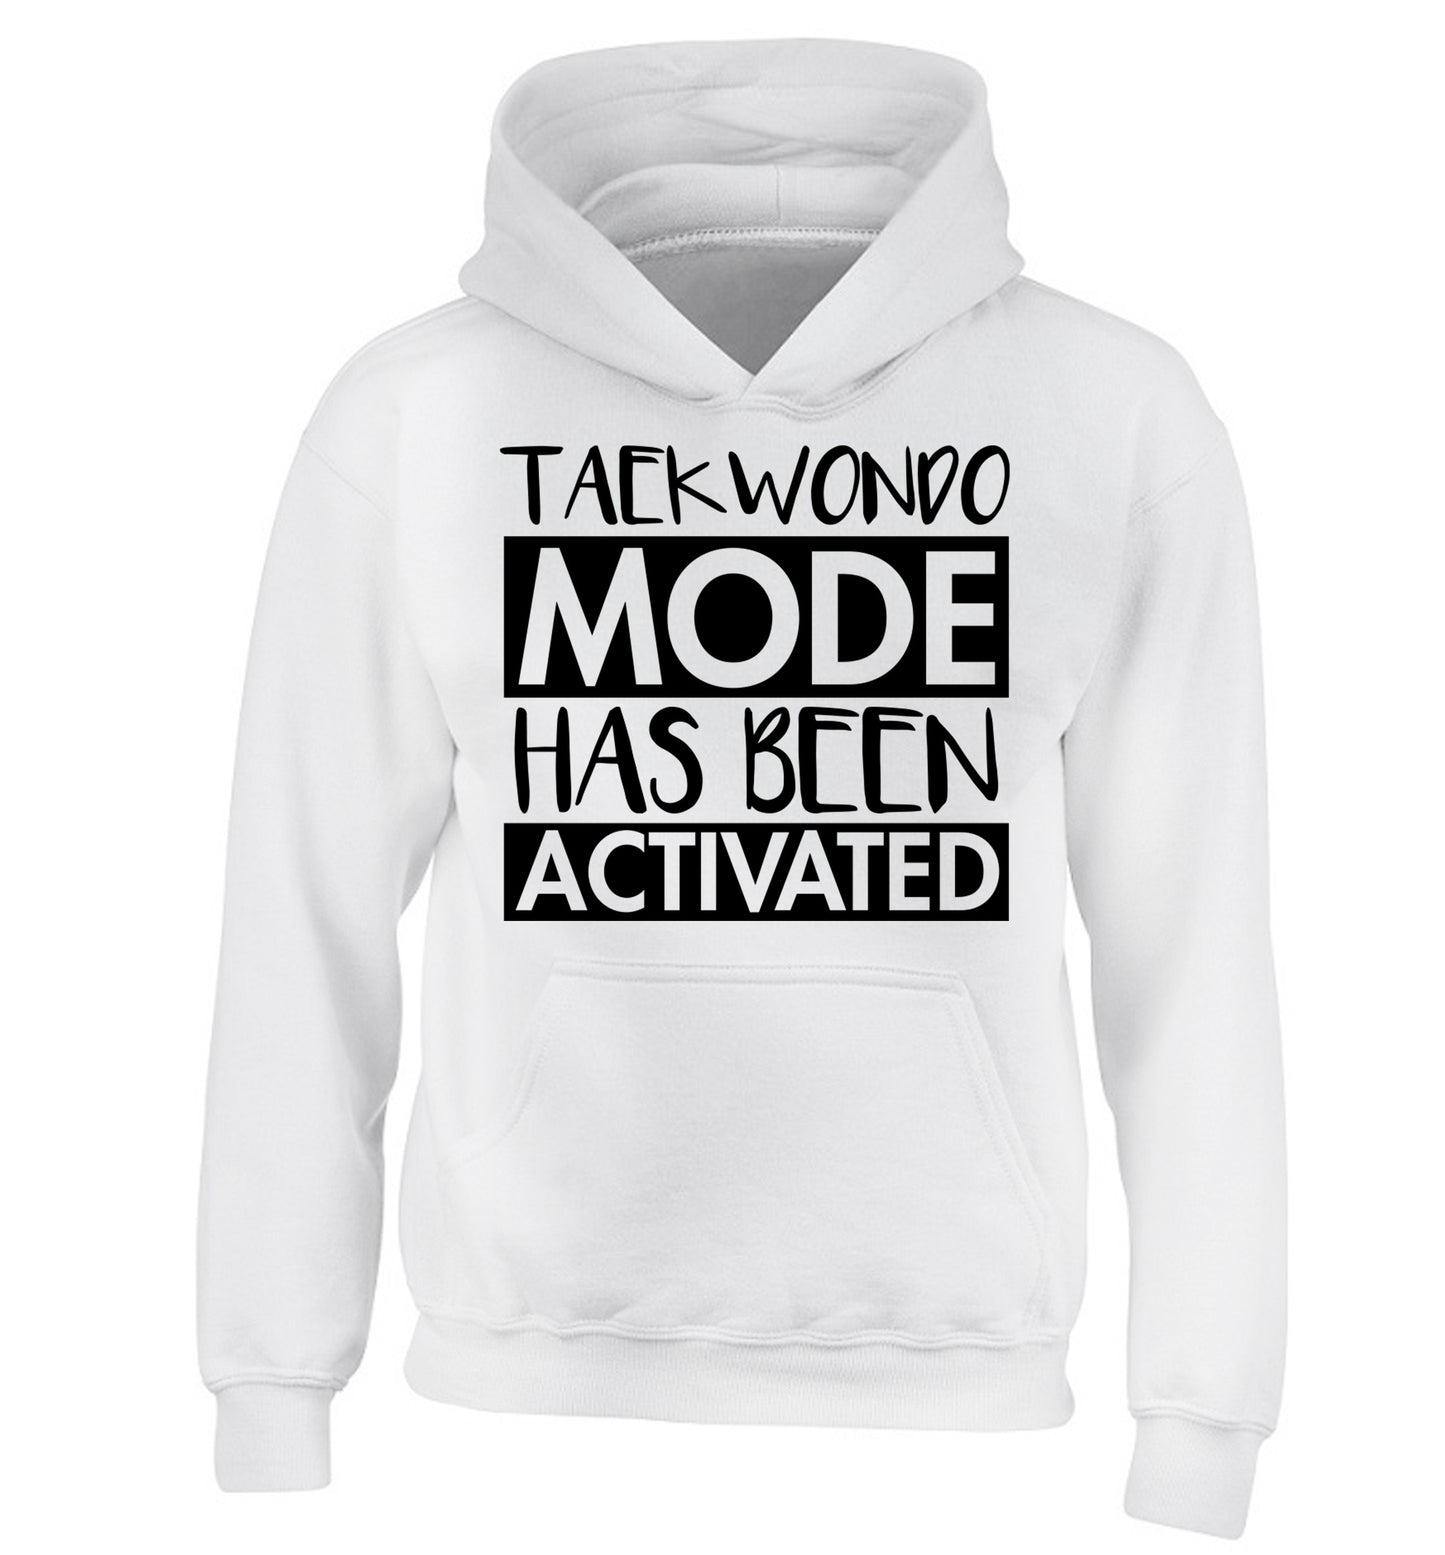 Taekwondo mode activated children's white hoodie 12-14 Years